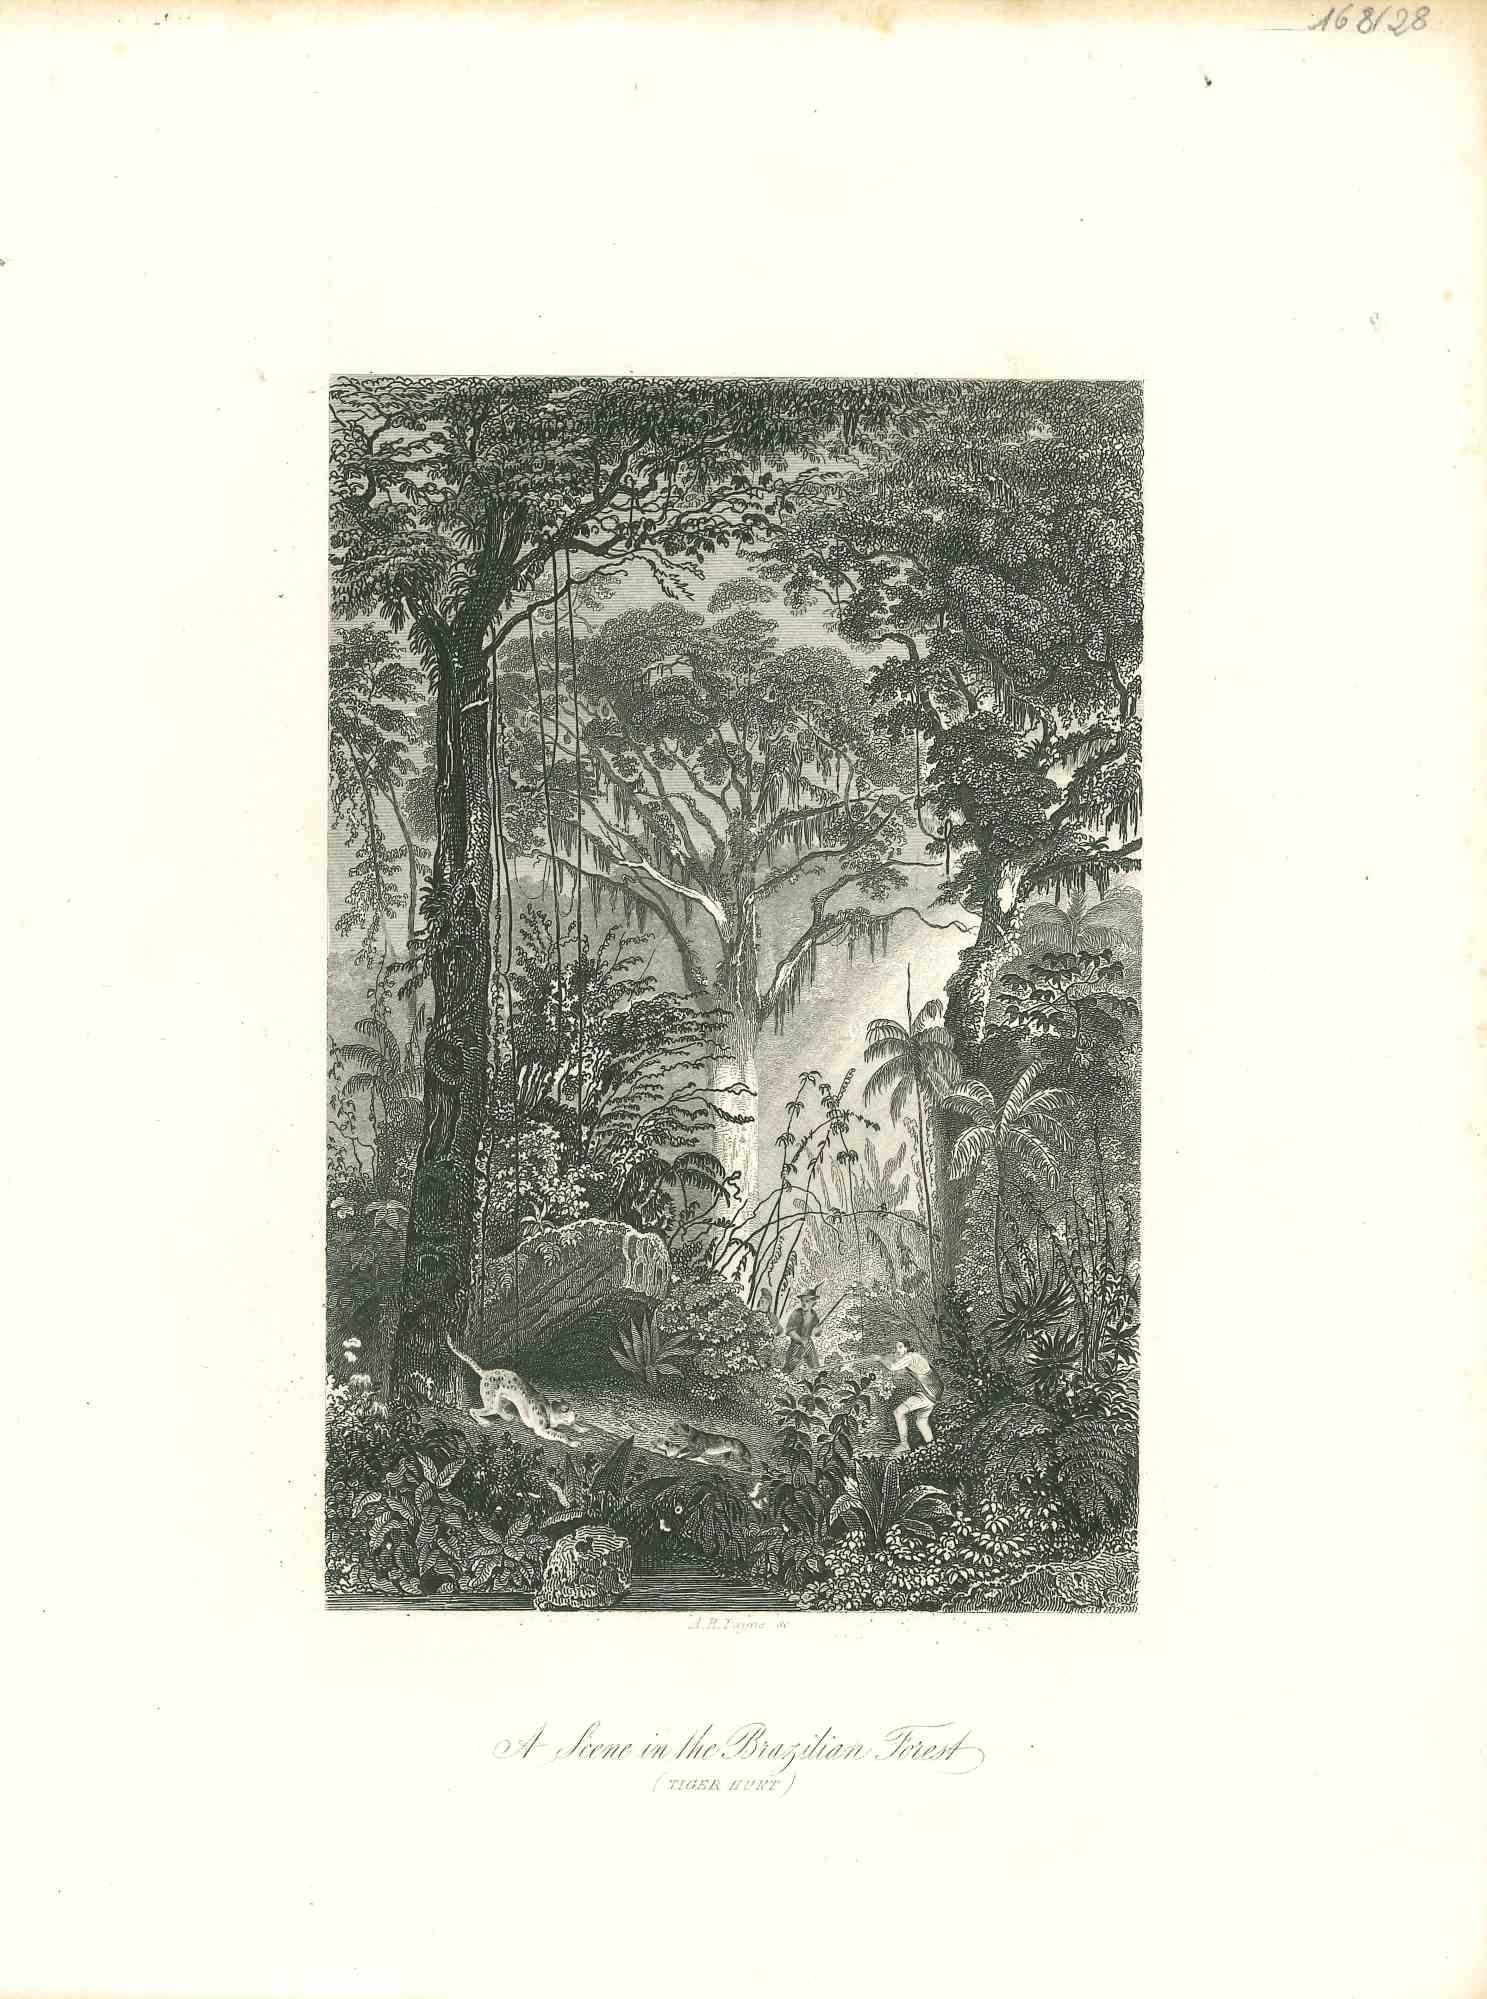 Lithographie originale « In the Brazilian Forest » (Dans la forêt du Brésil), début du XIXe siècle